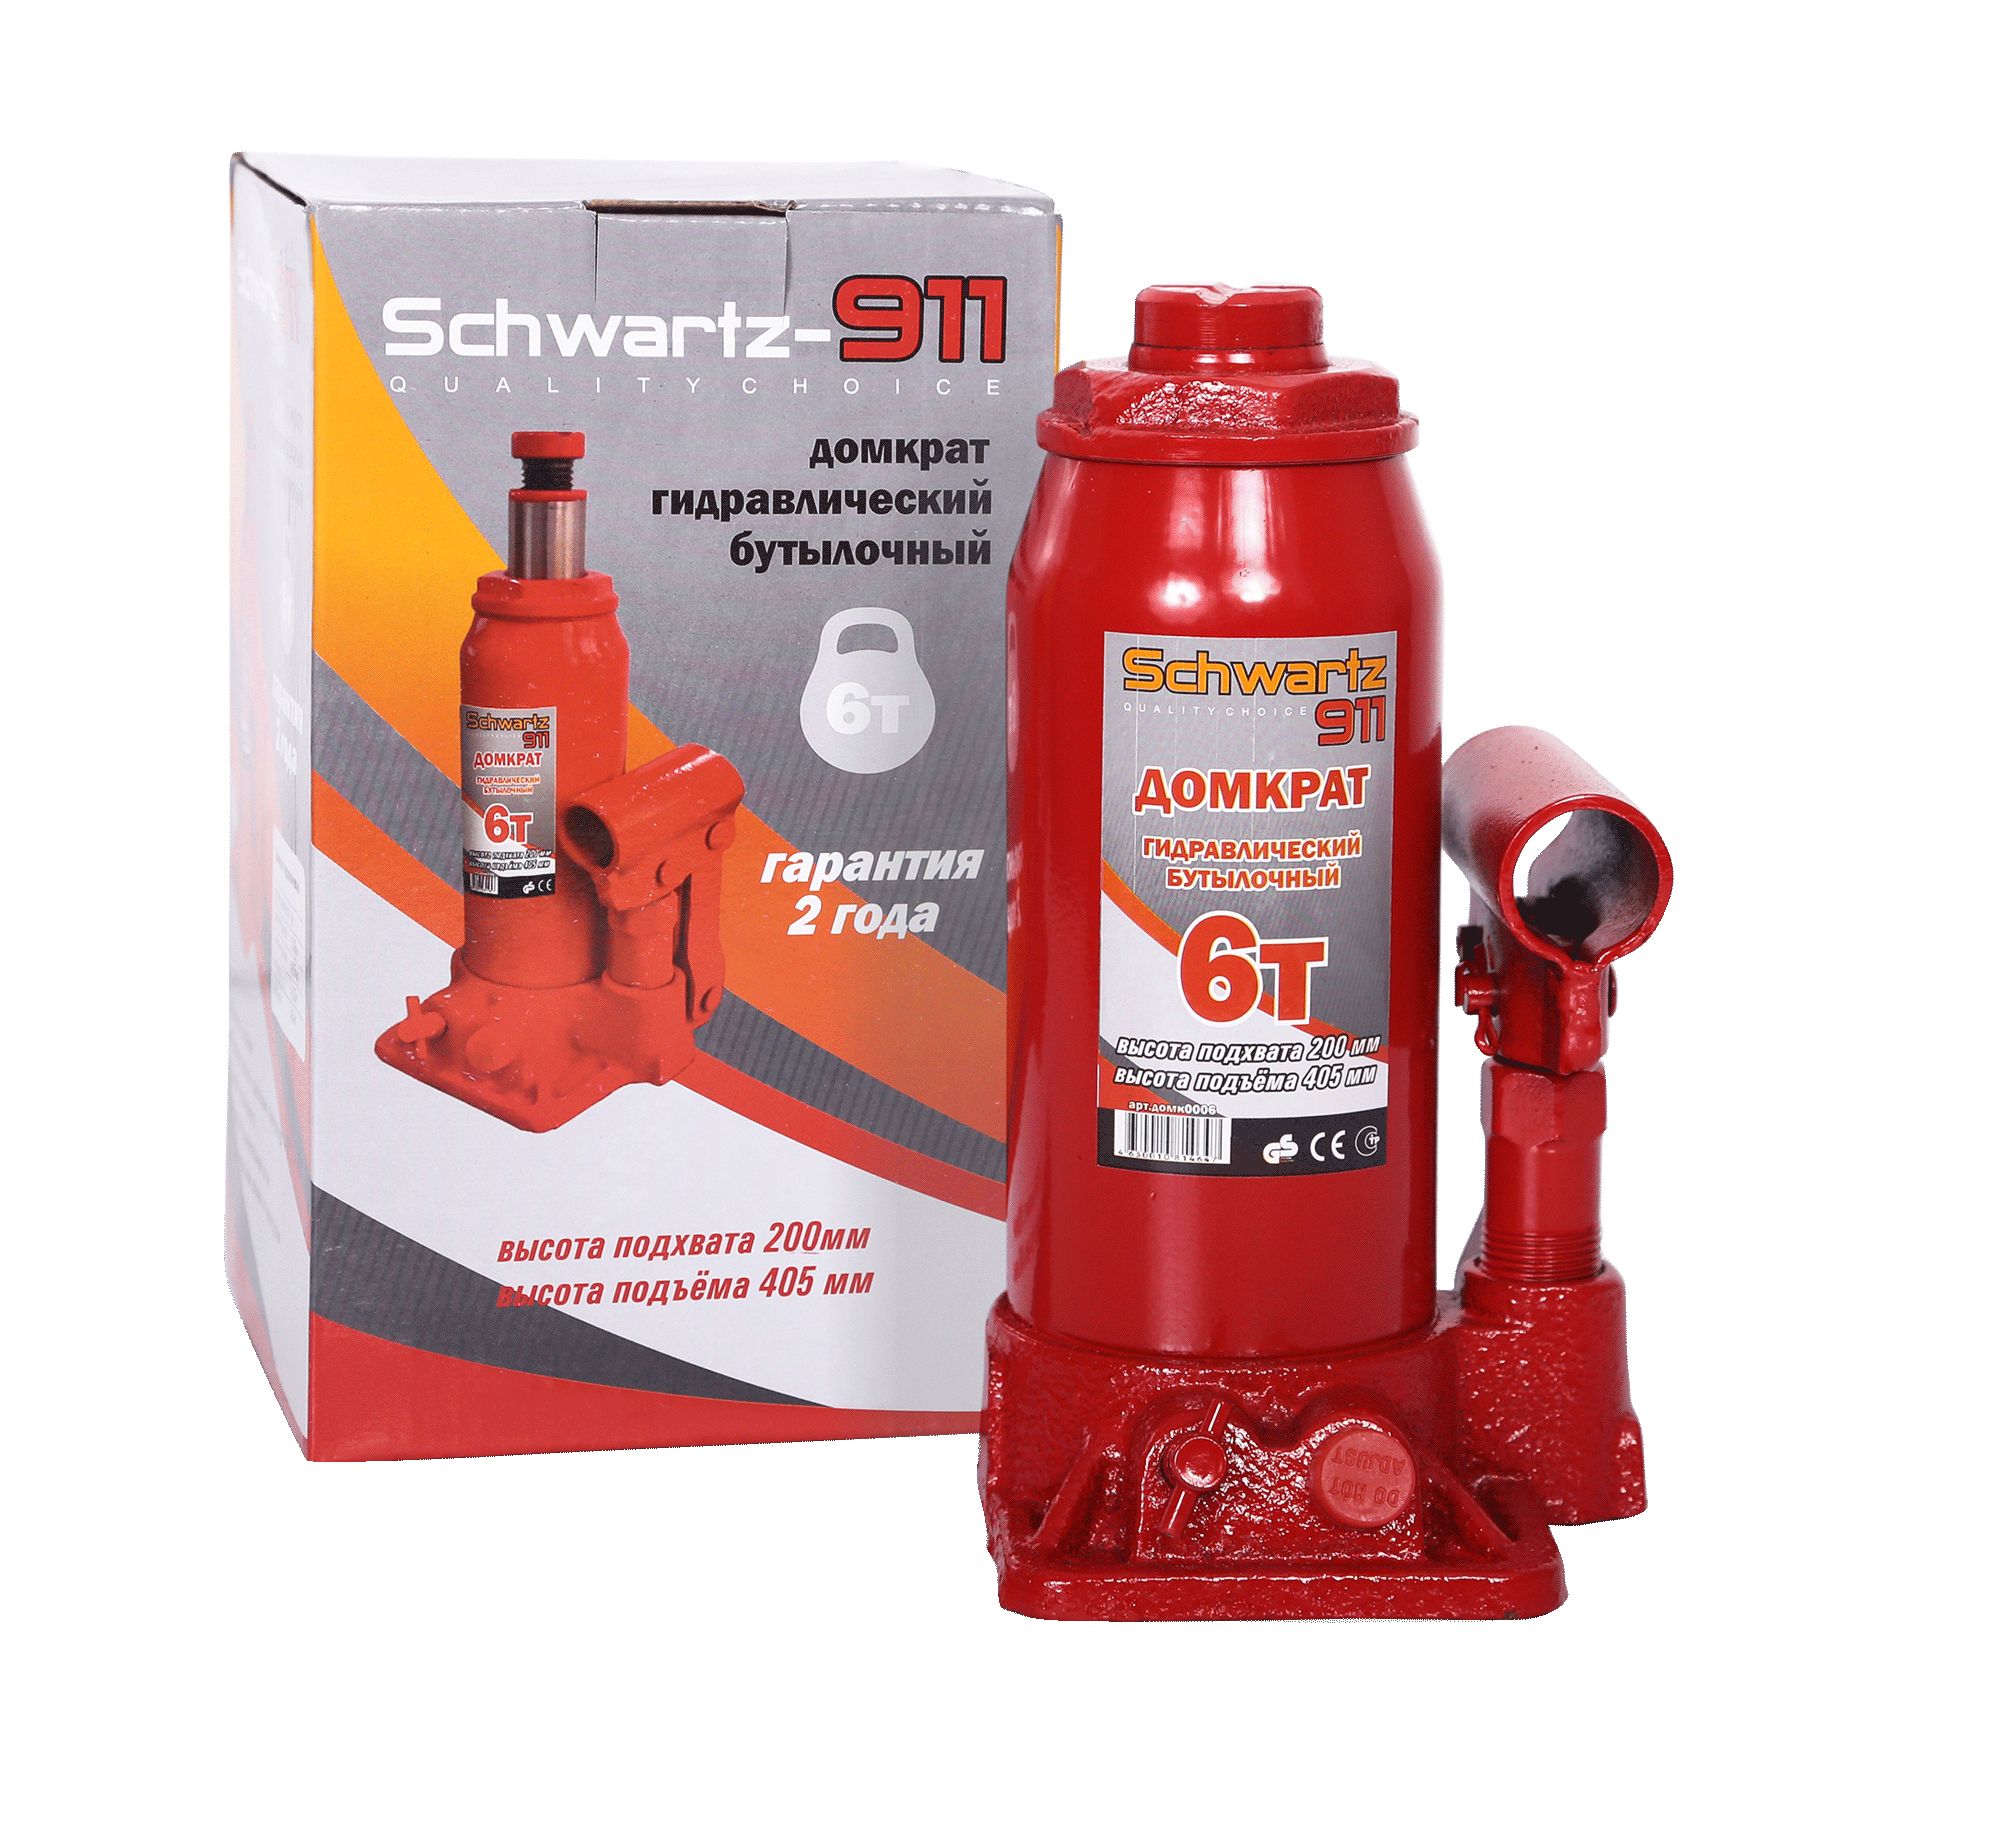 Домкрат гидравлический бутылочный schwartz-911 6 т - AZARD DOMK0006